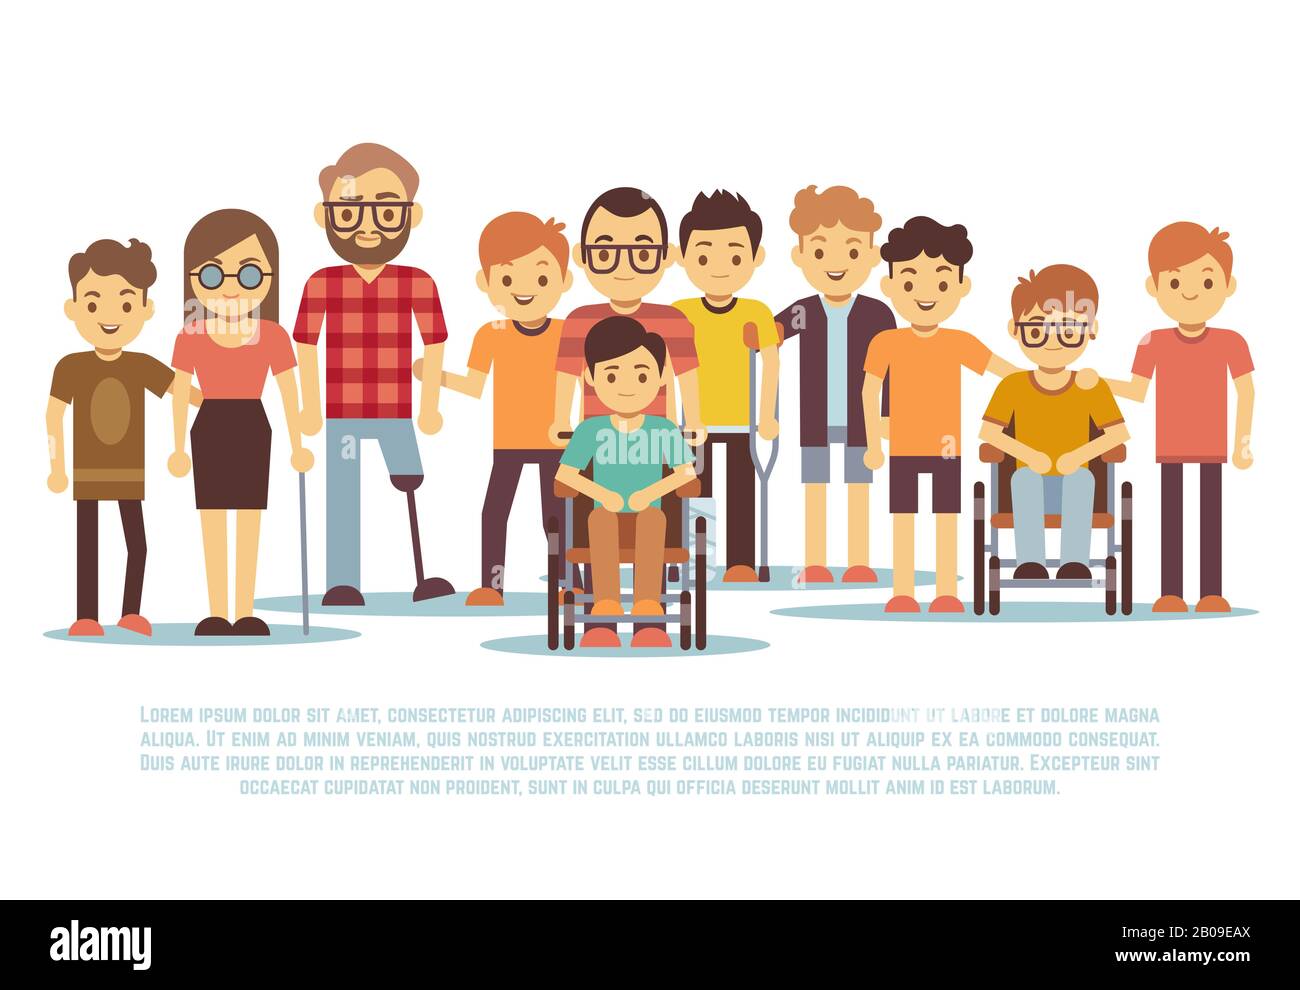 Enfants handicapés, enfants handicapés, divers étudiants en fauteuil roulant. Groupe de personnes handicapées, illustration de la tolérance pour les personnes handicapées Illustration de Vecteur